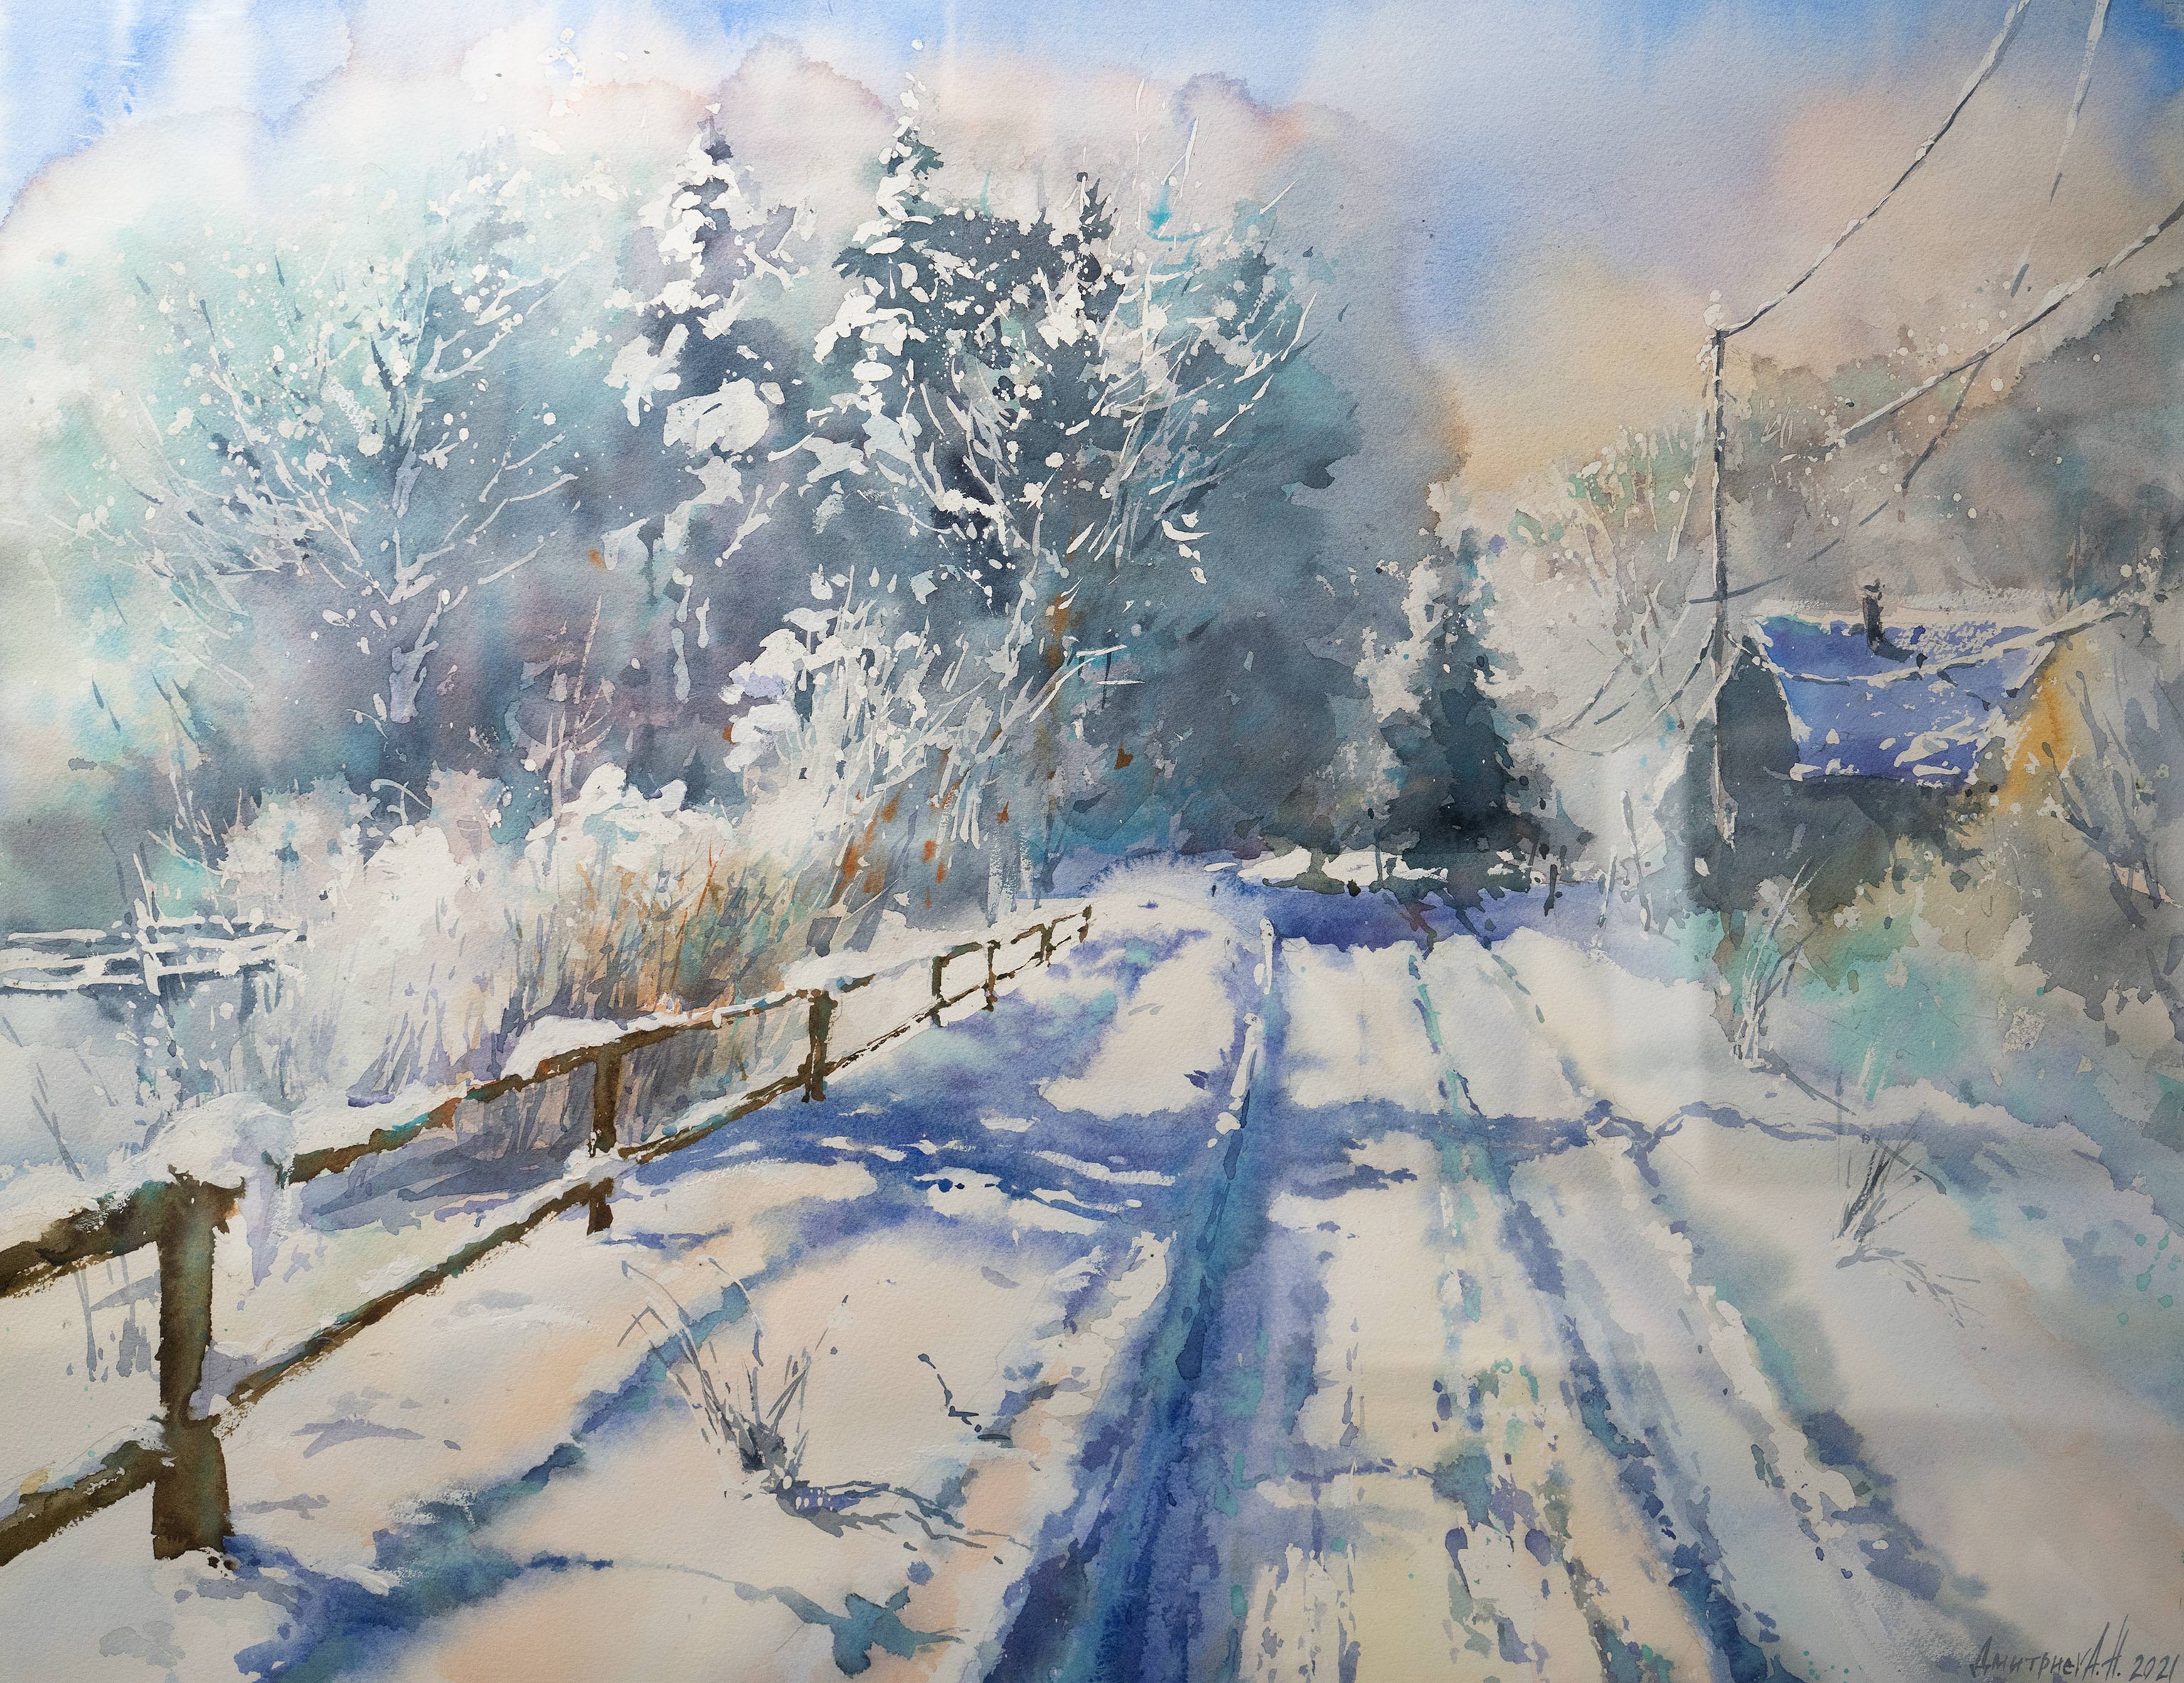 Winter in Krasnodar - 1, Natalia Dmitrieva, Buy the painting Watercolor